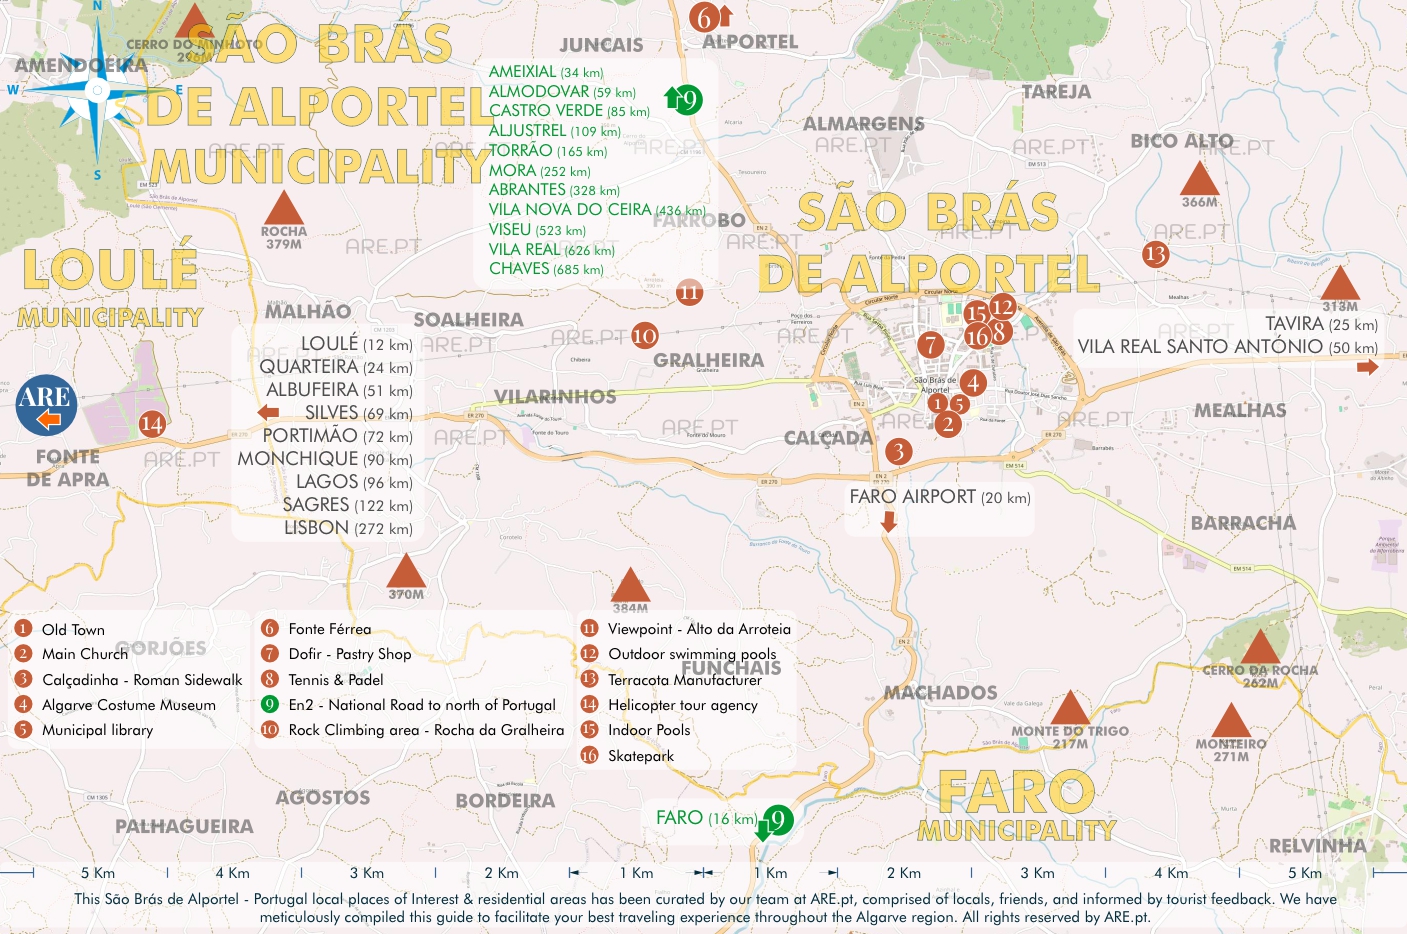 Mapa de São Brás de Alportel e arredores, com principais pontos de interesse, localizações úteis e zonas residenciais. Distâncias às principais localidades do sul de Portugal